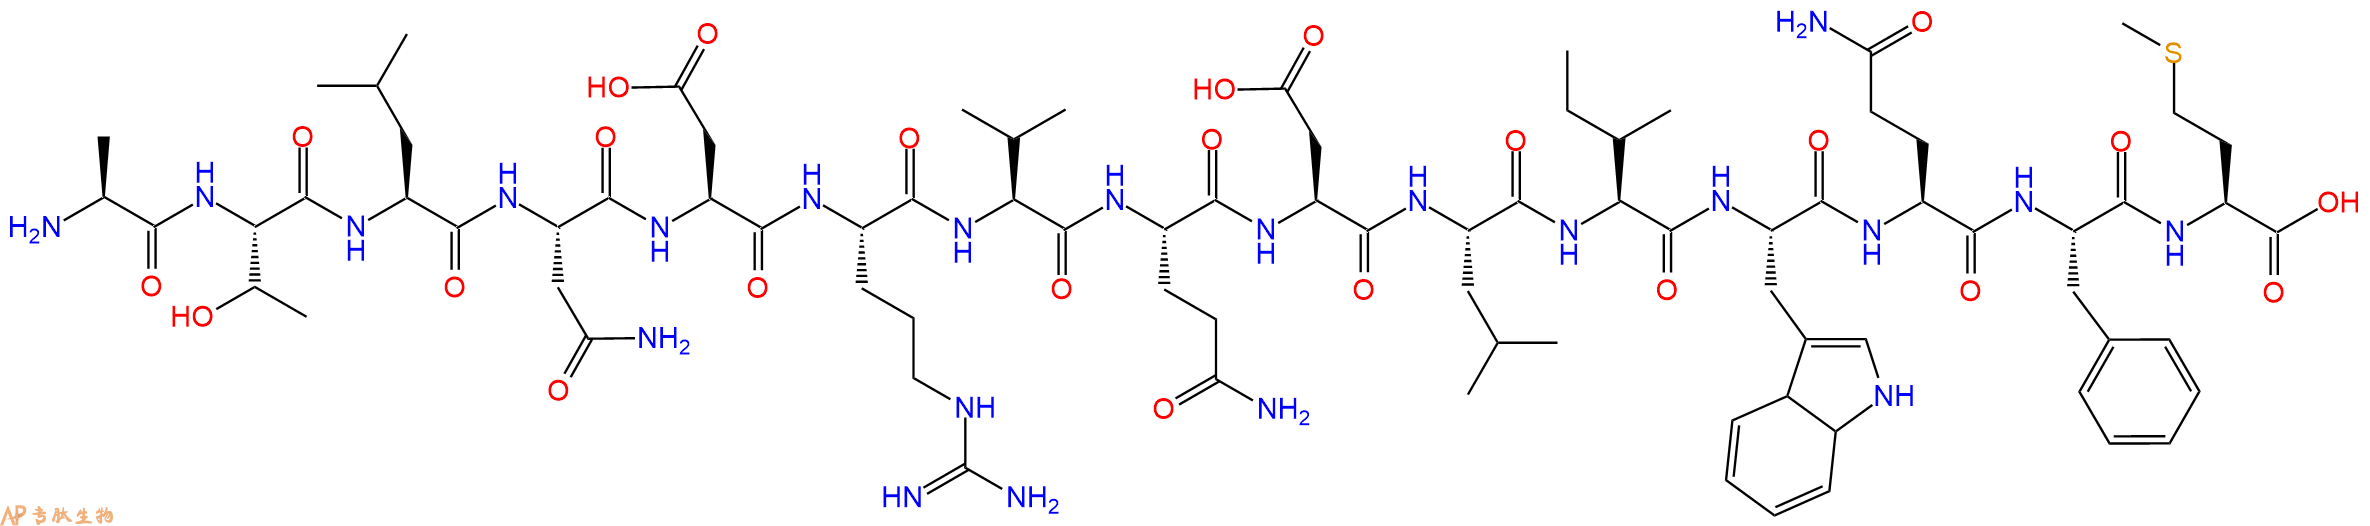 多肽ATLNDRVQDLIWQFM的参数和合成路线|三字母为Ala-Thr-Leu-Asn-Asp-